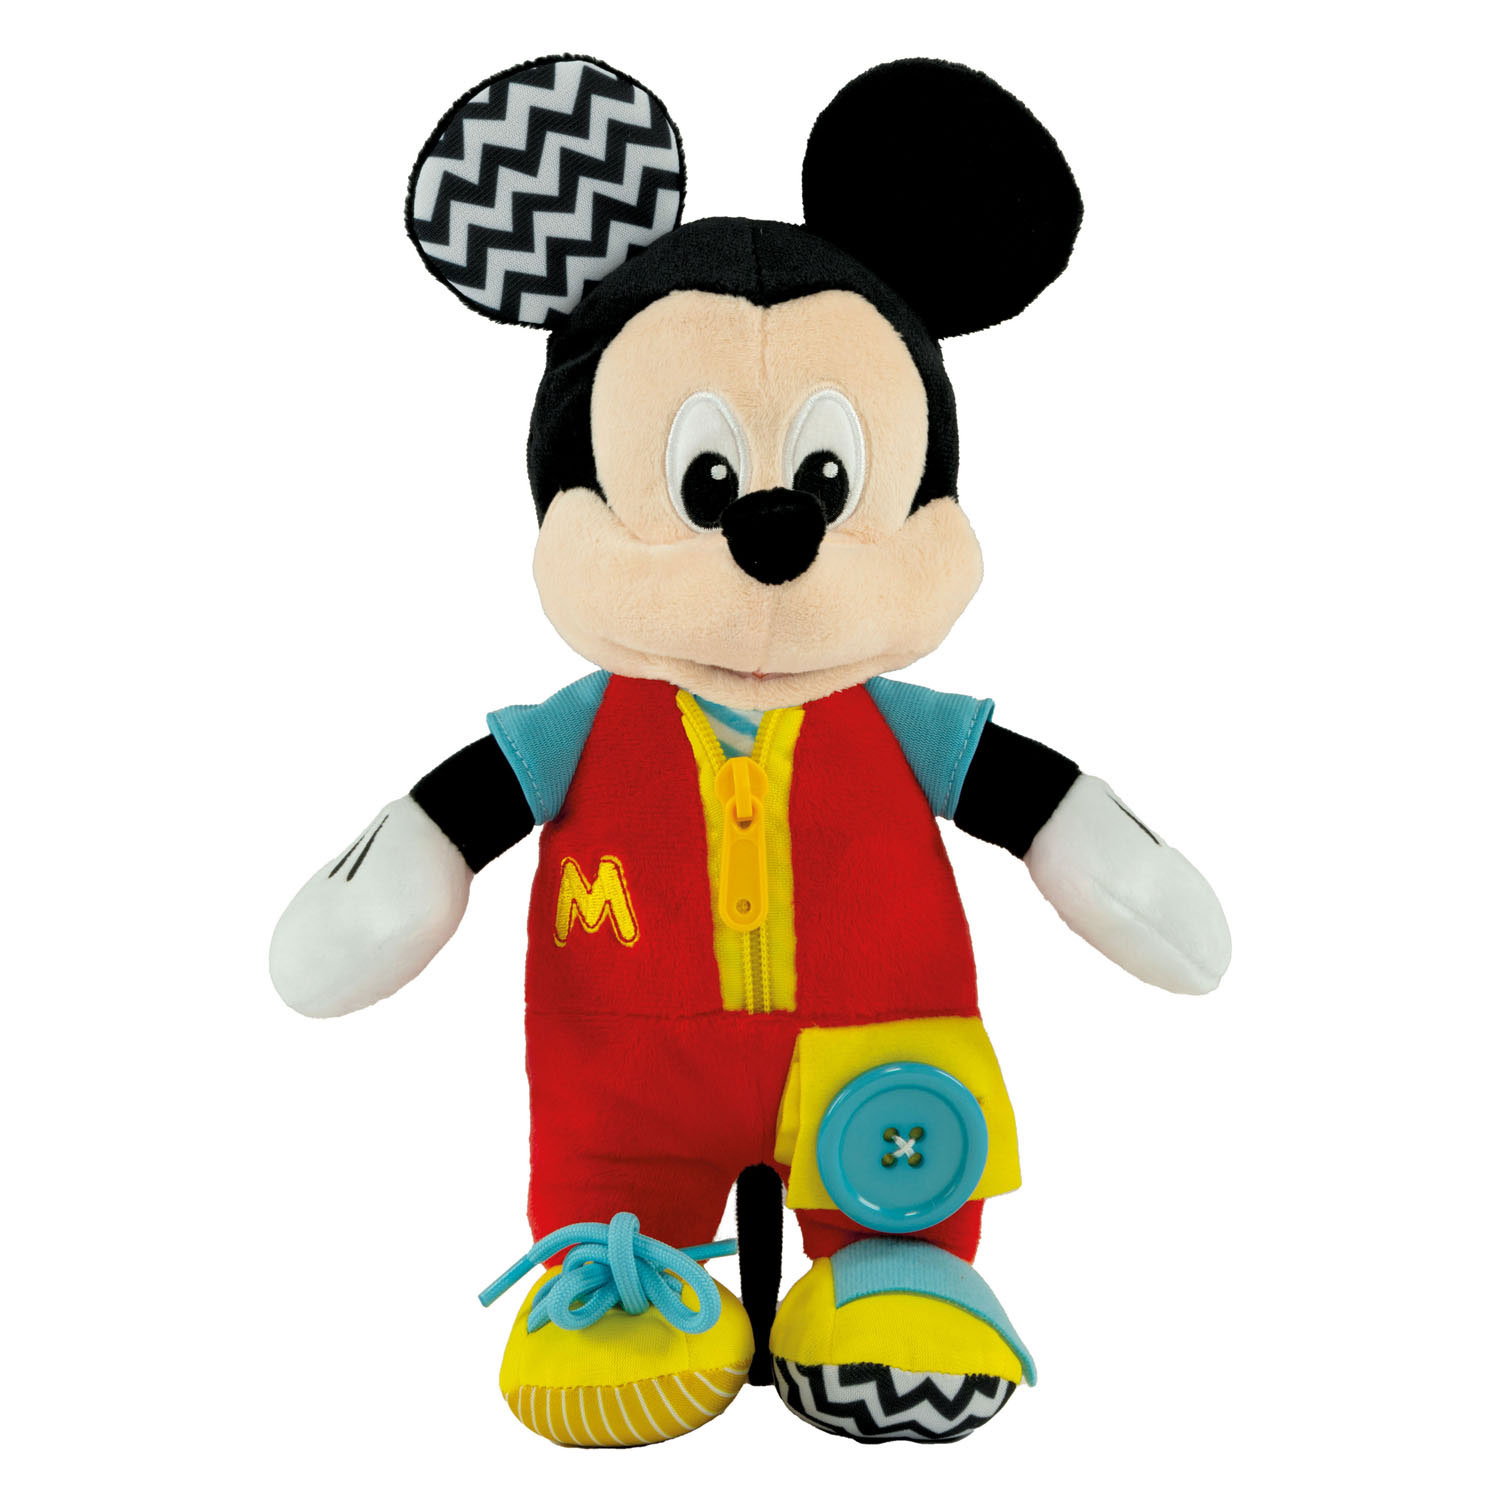 Acheter Clementoni Baby Disney Mickey Mouse en peluche en ligne?